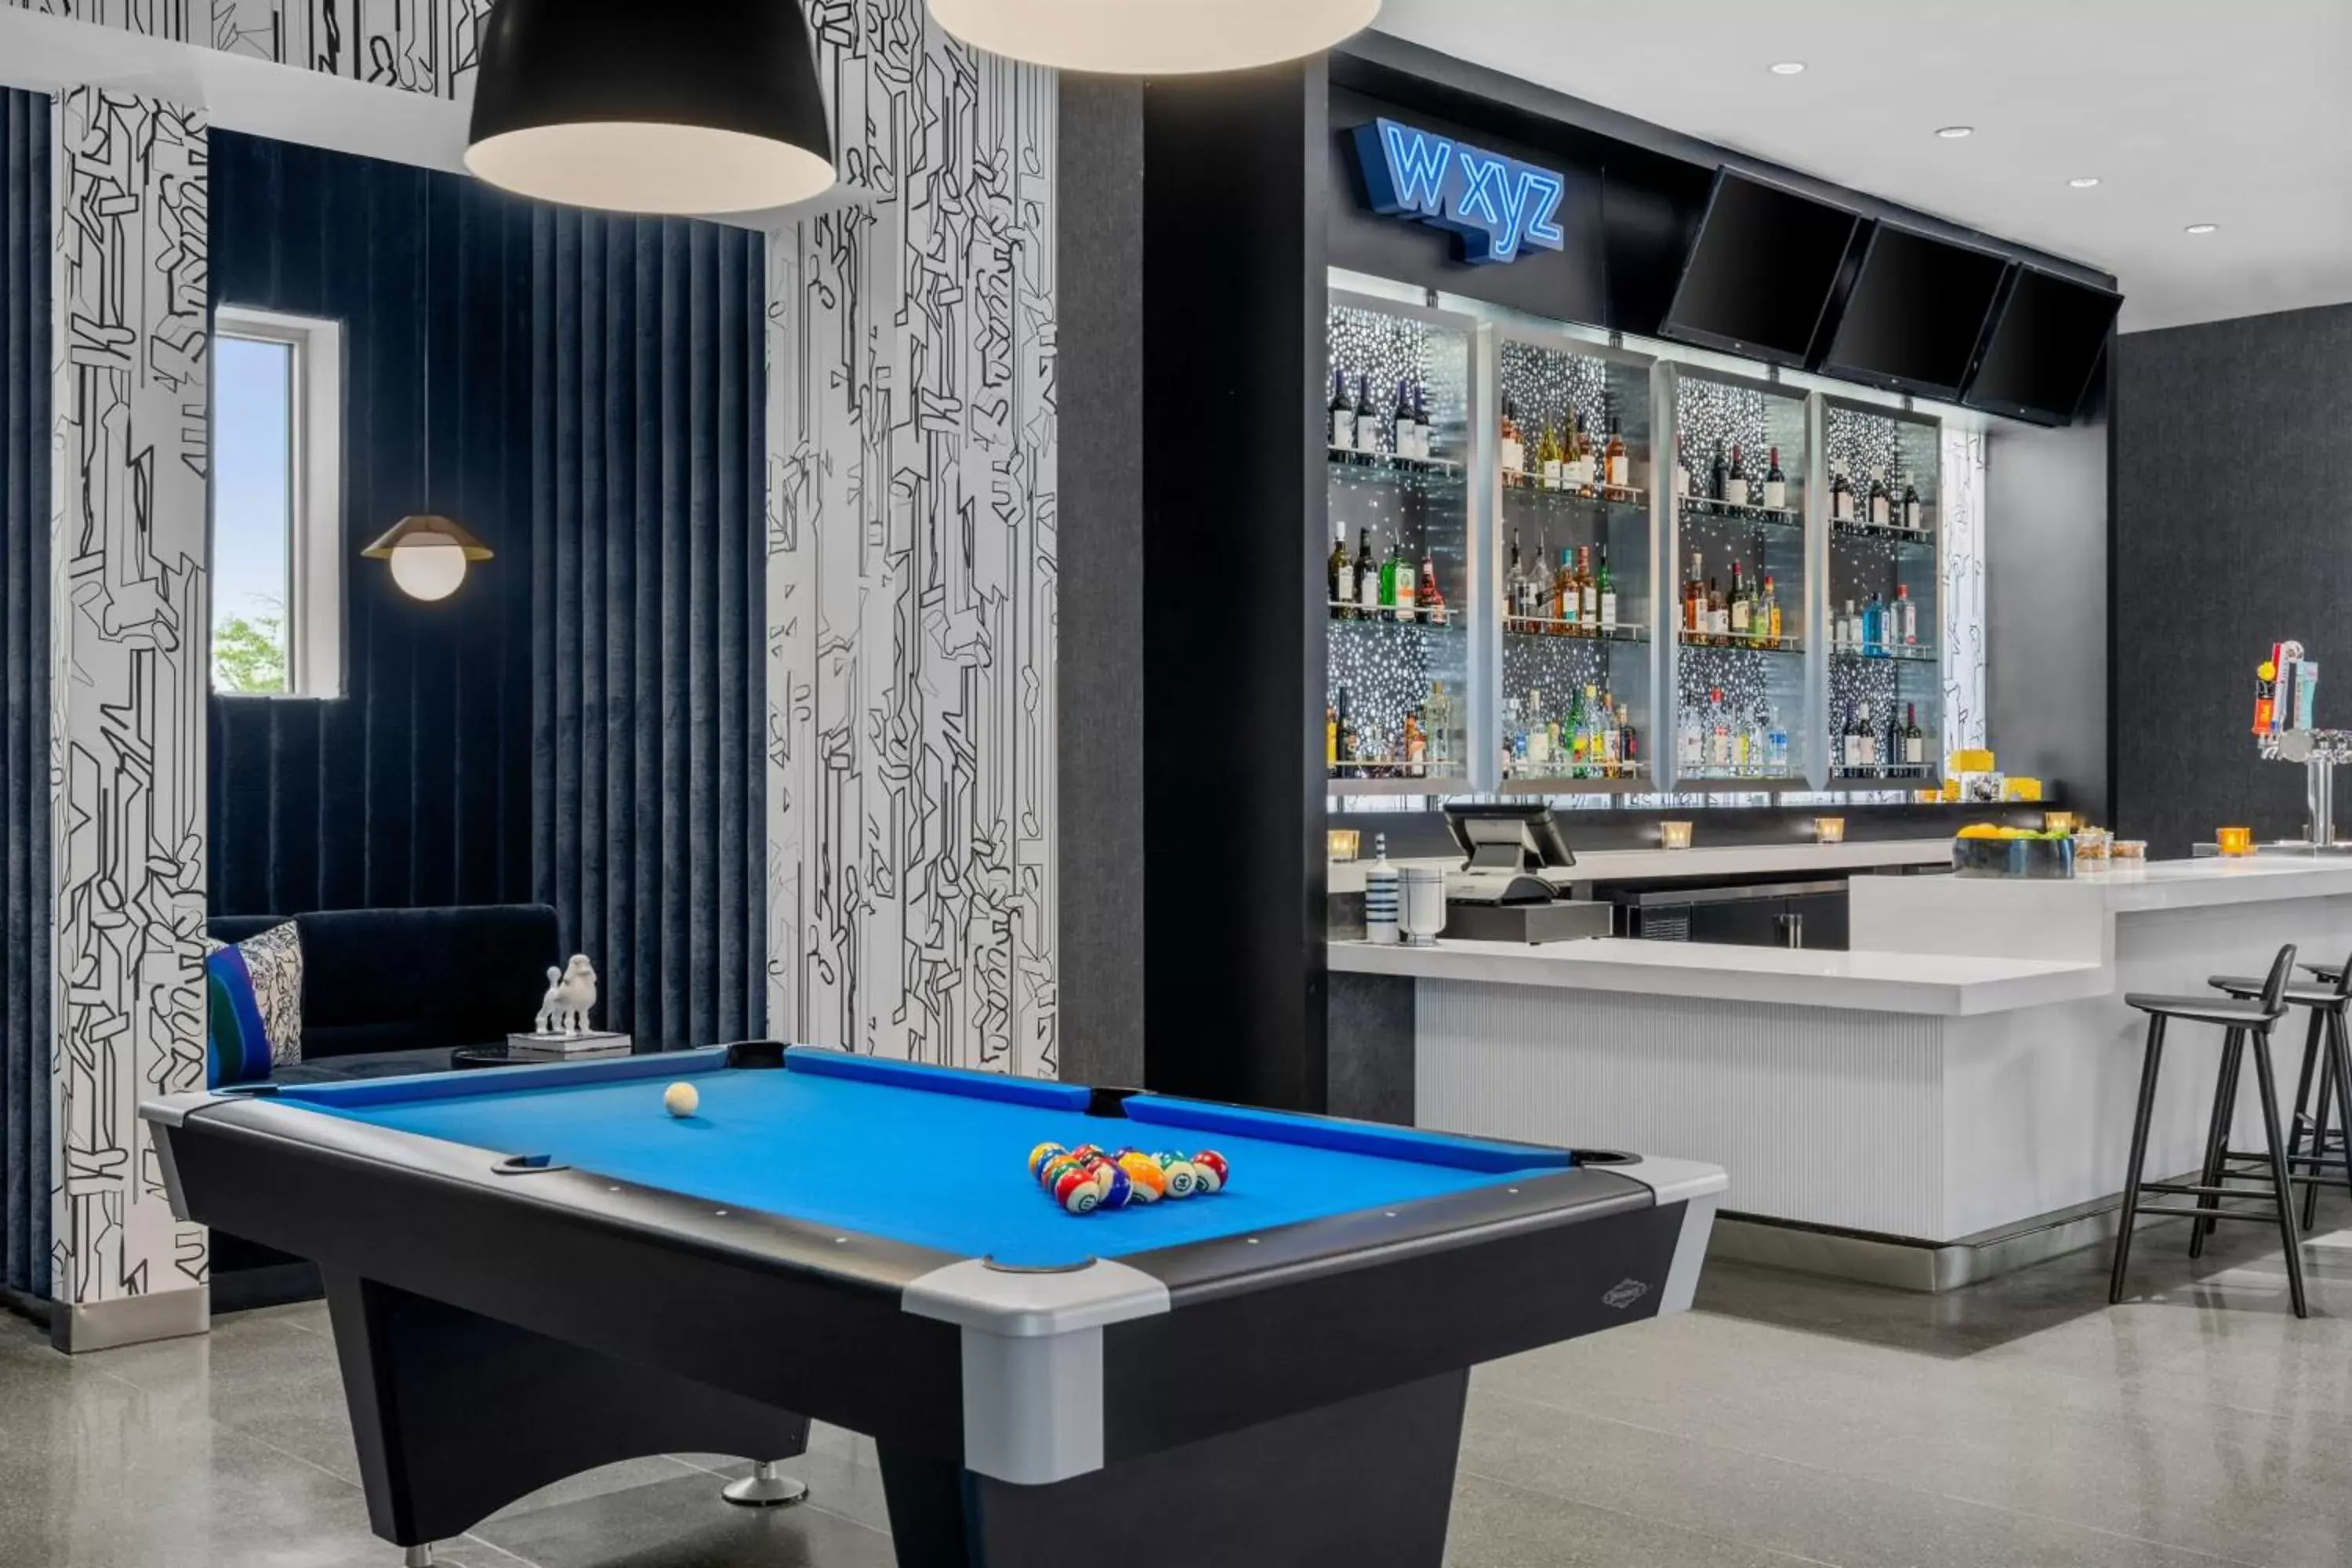 Lounge or bar, Billiards in Aloft Chicago Schaumburg